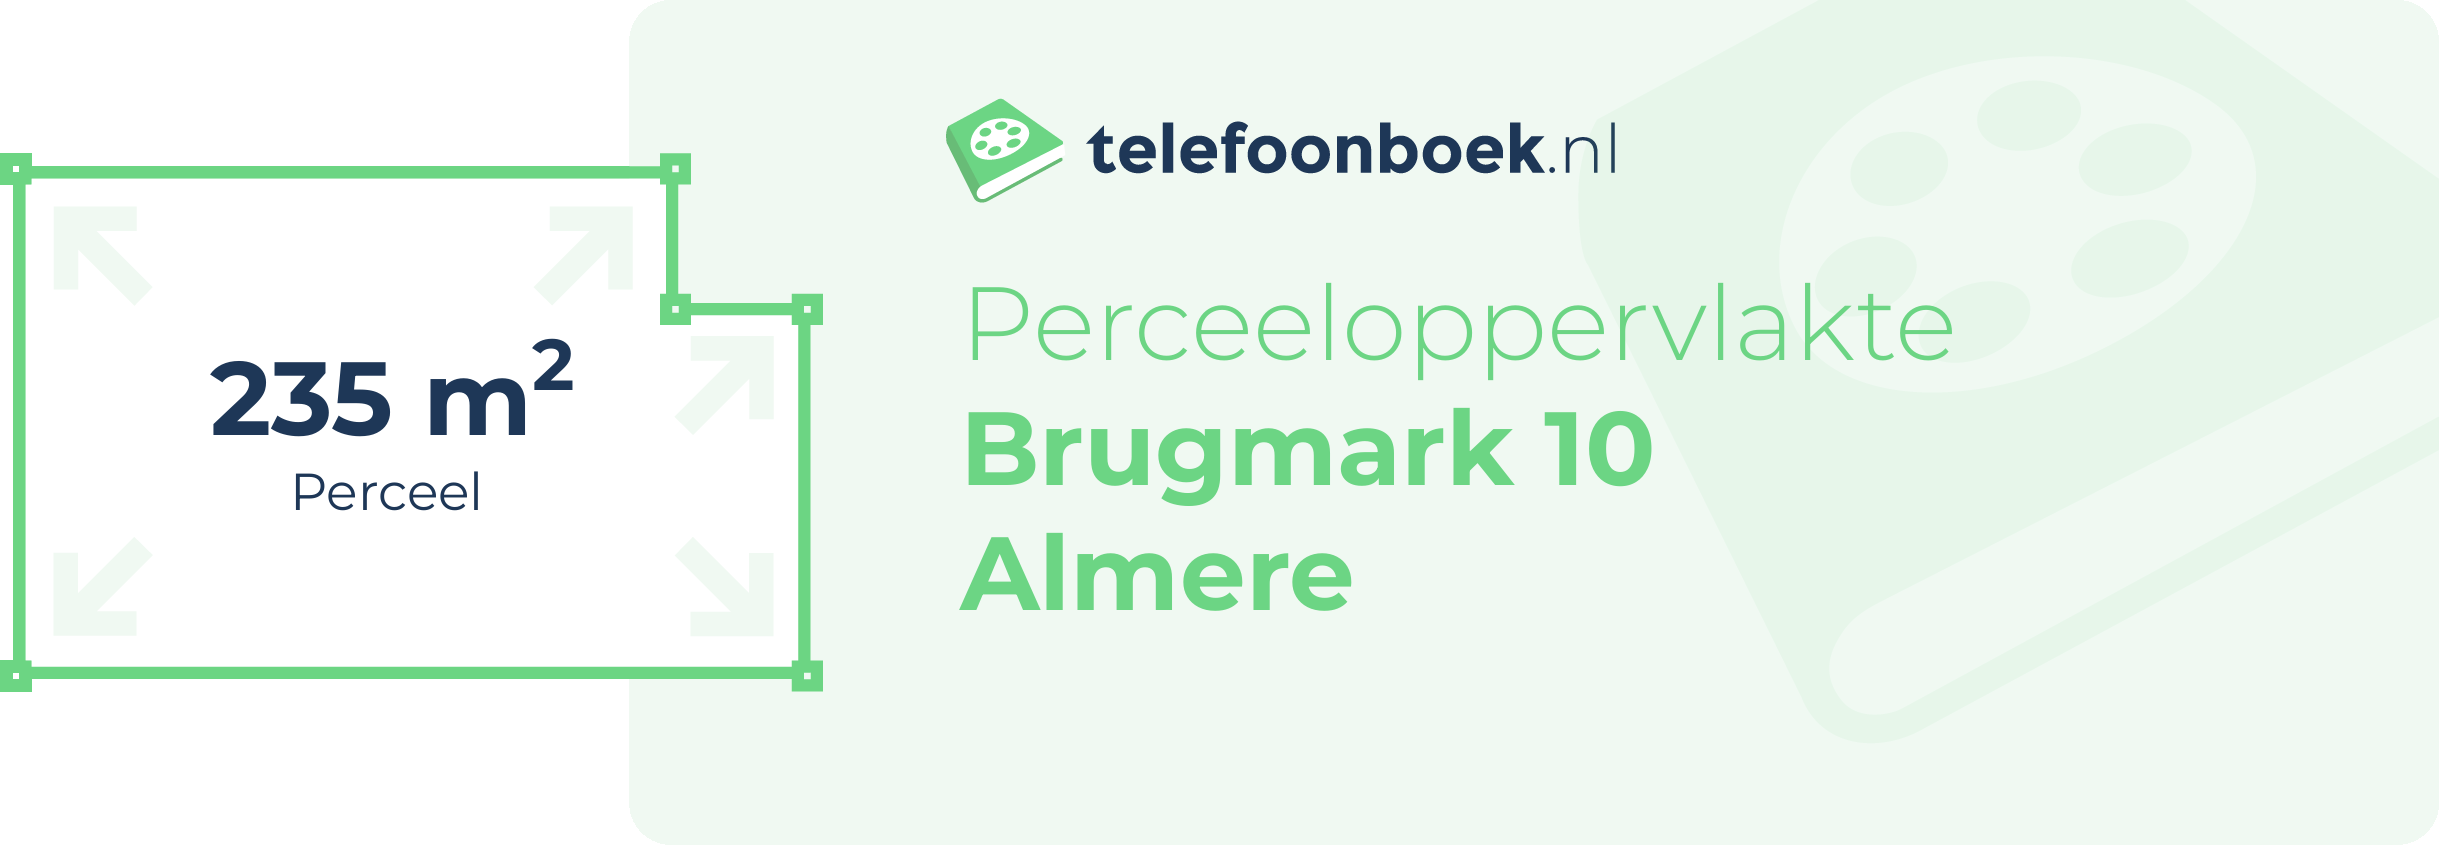 Perceeloppervlakte Brugmark 10 Almere